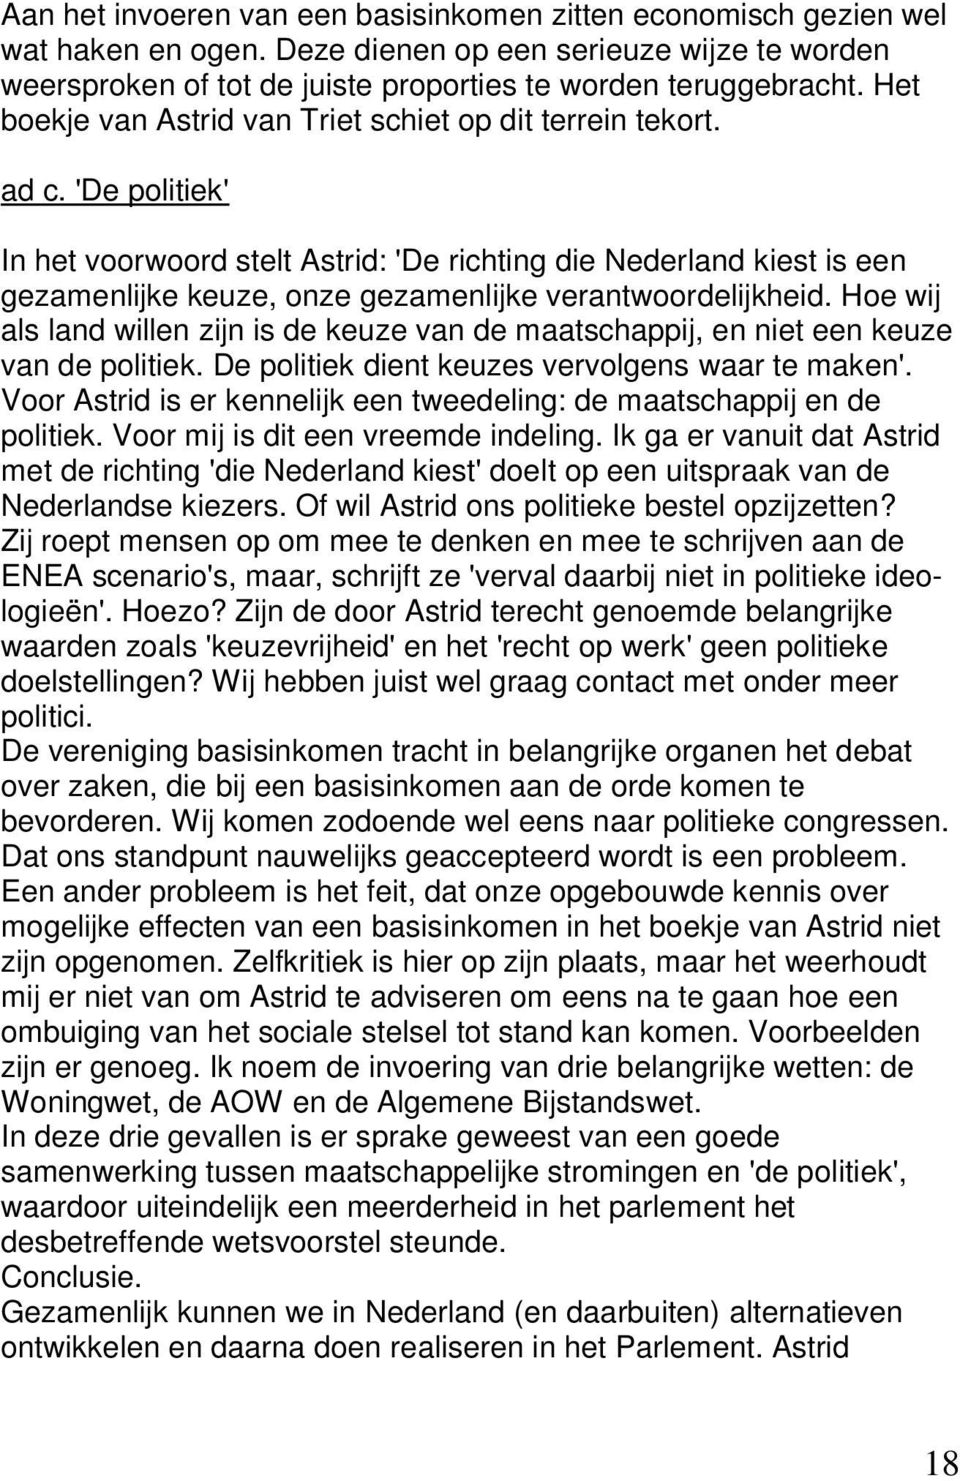 'De politiek' In het voorwoord stelt Astrid: 'De richting die Nederland kiest is een gezamenlijke keuze, onze gezamenlijke verantwoordelijkheid.